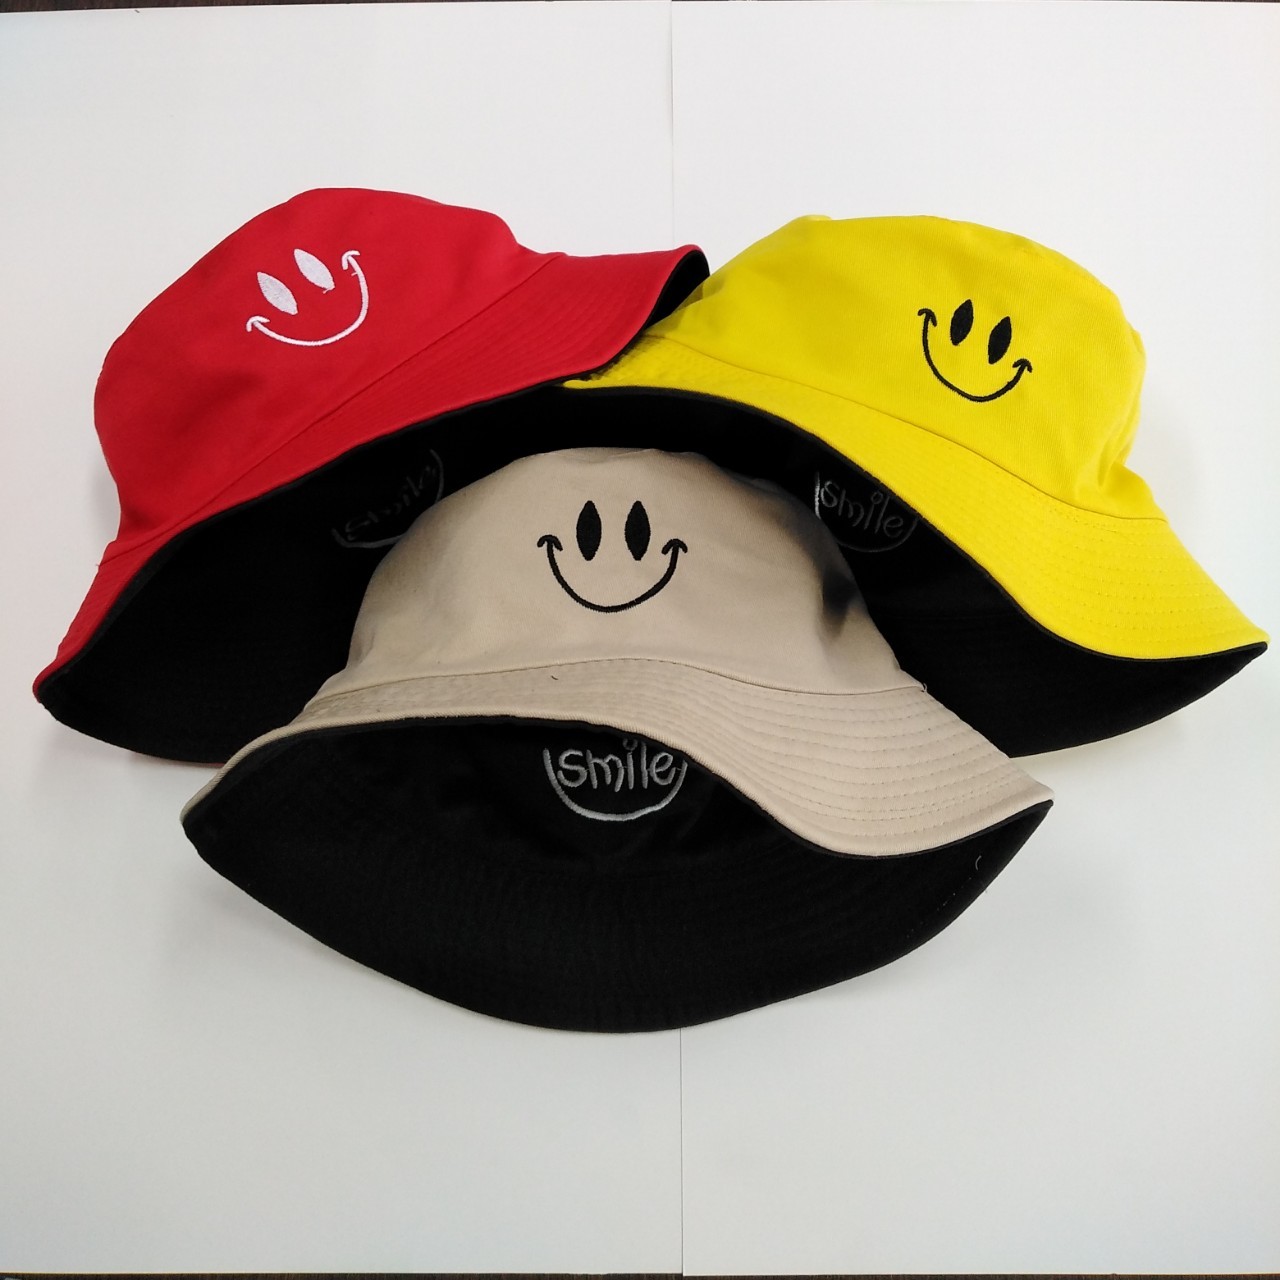 AM0031หมวกบักเก็ตใส่ได้ 2ด้าน หมวก bucketสไตล์ญี่ปุ่น ทั้งชายและหญิงสามารถสวมใส่ได้  ลายปักหน้ายิ้ม หมวกแฟชั่น